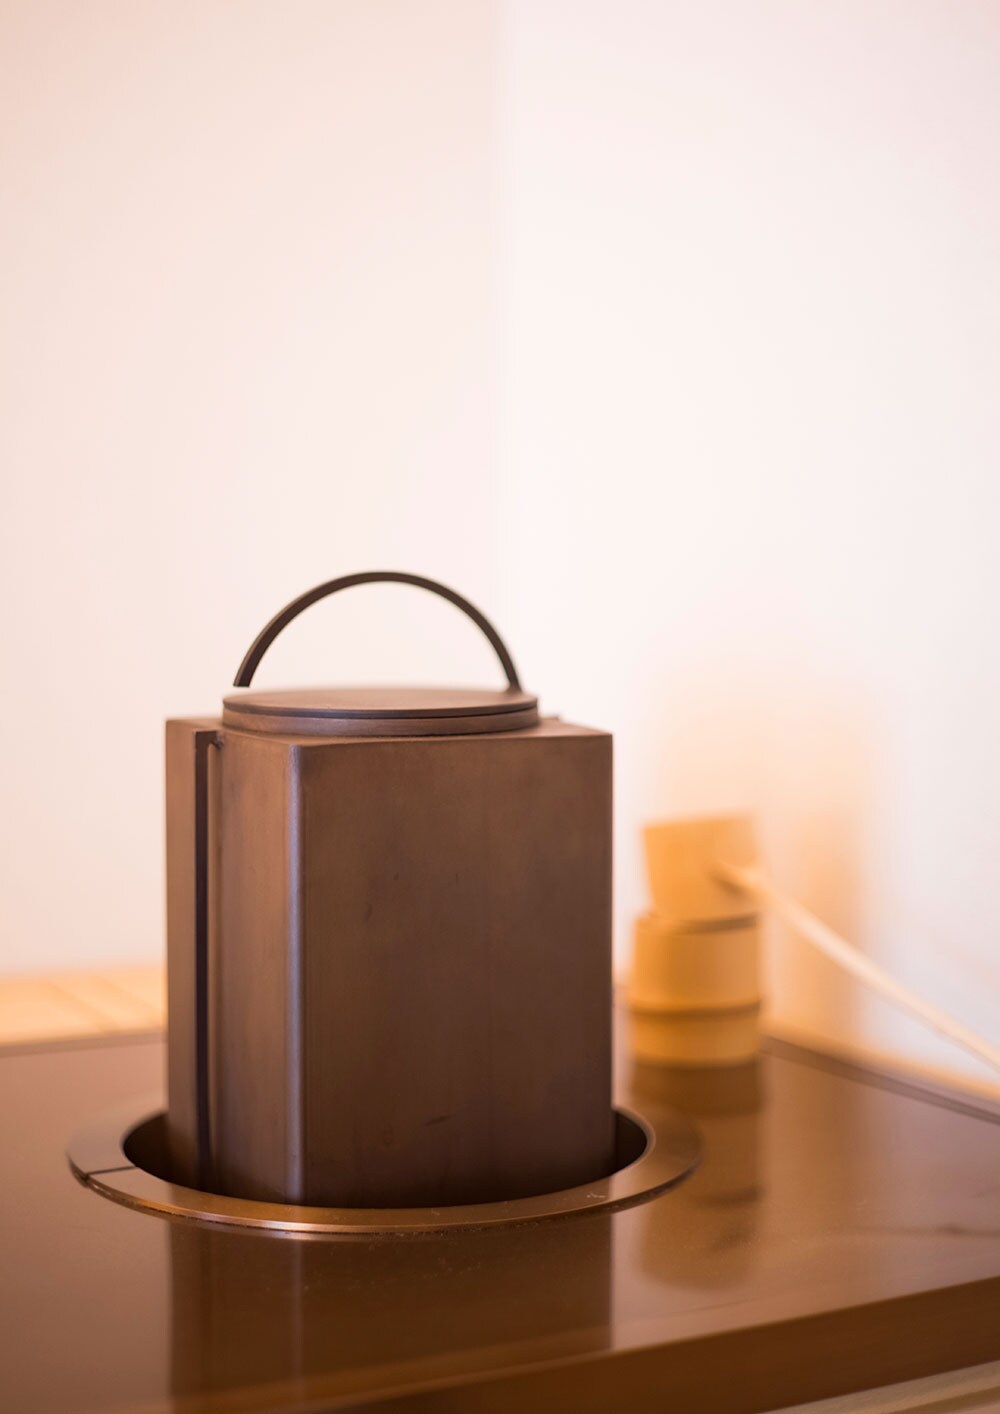 客室には鉄瓶が用意され、“ふふラグジュアリープレミアムスイート”には、茶を沸かす茶釜も。